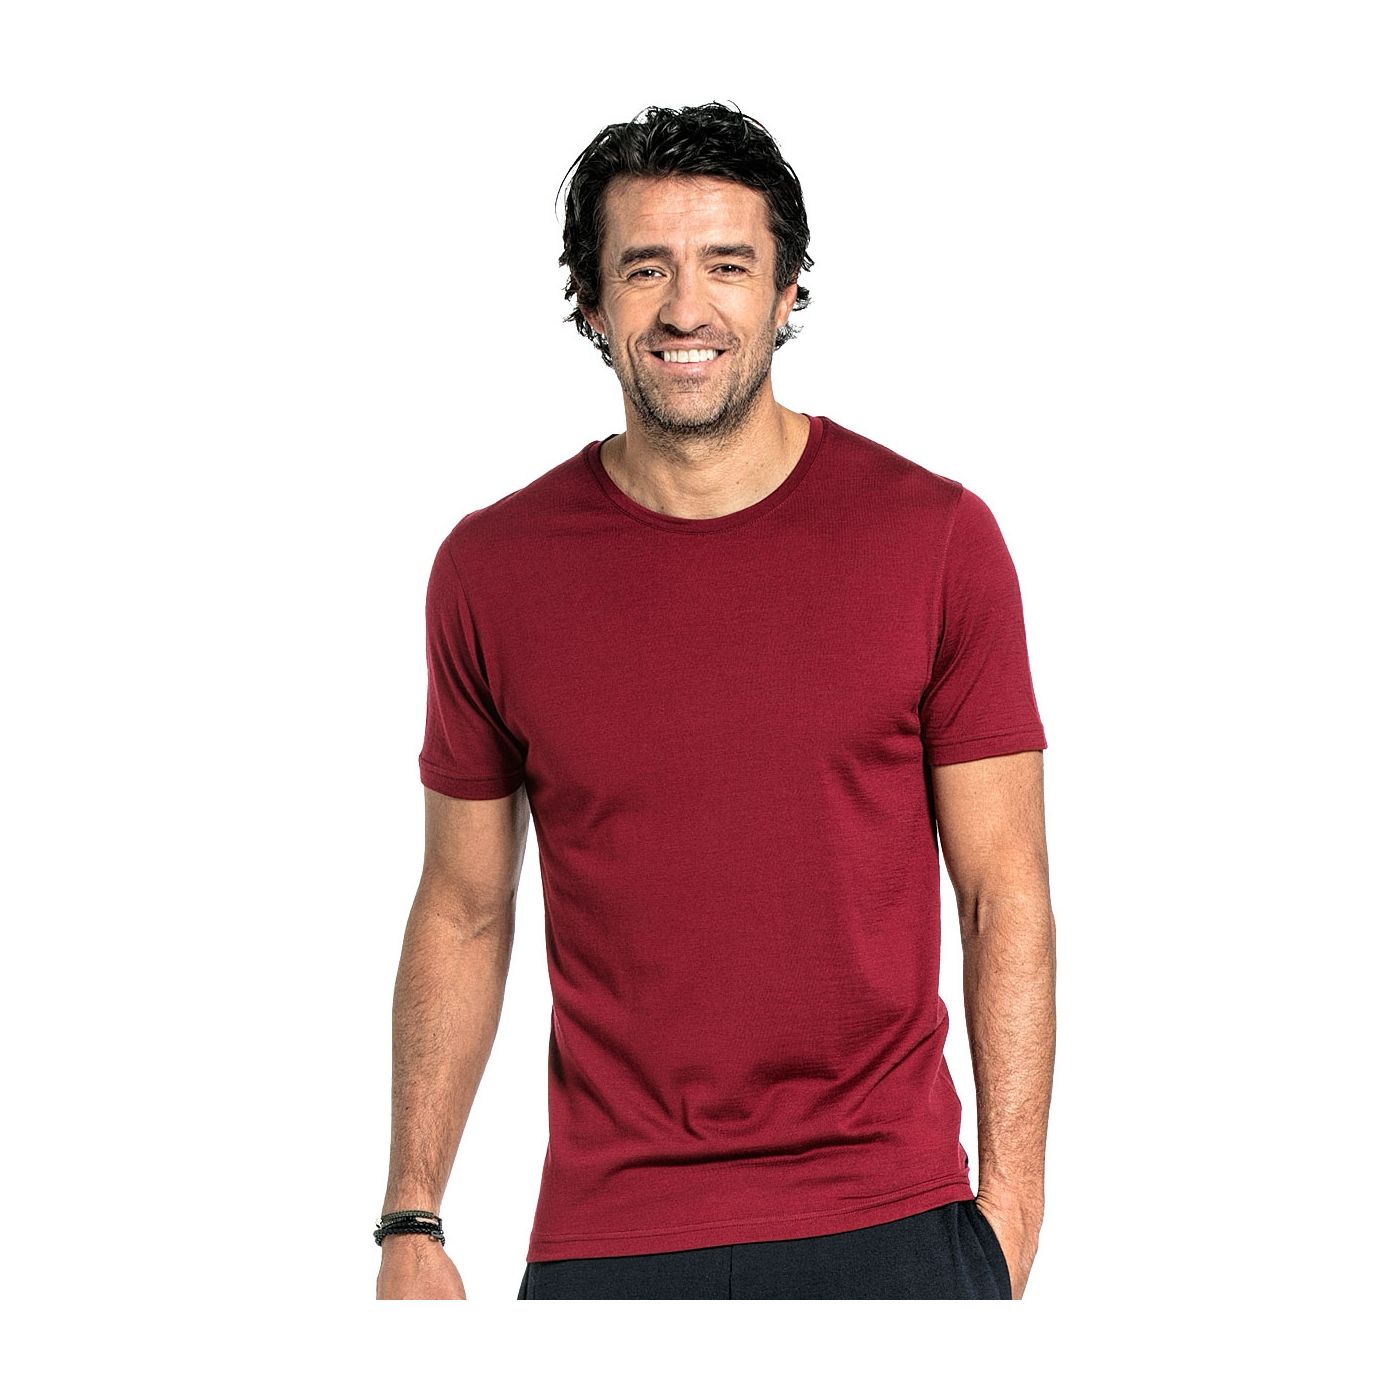 T-shirt voor mannen gemaakt van merinowol in het Rood